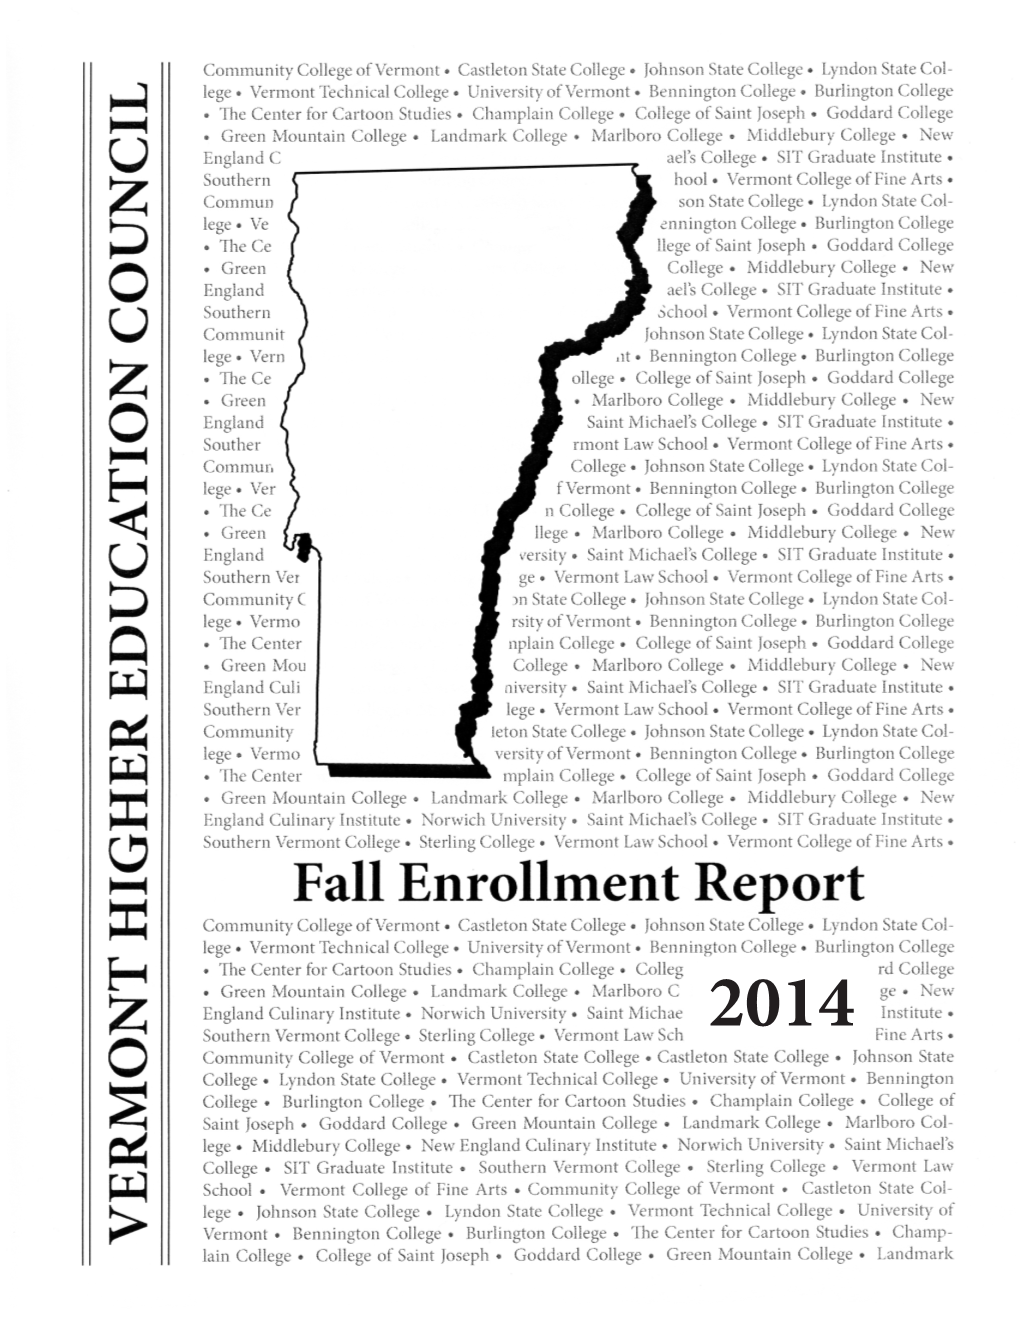 Fall 2014 Enrollment Report